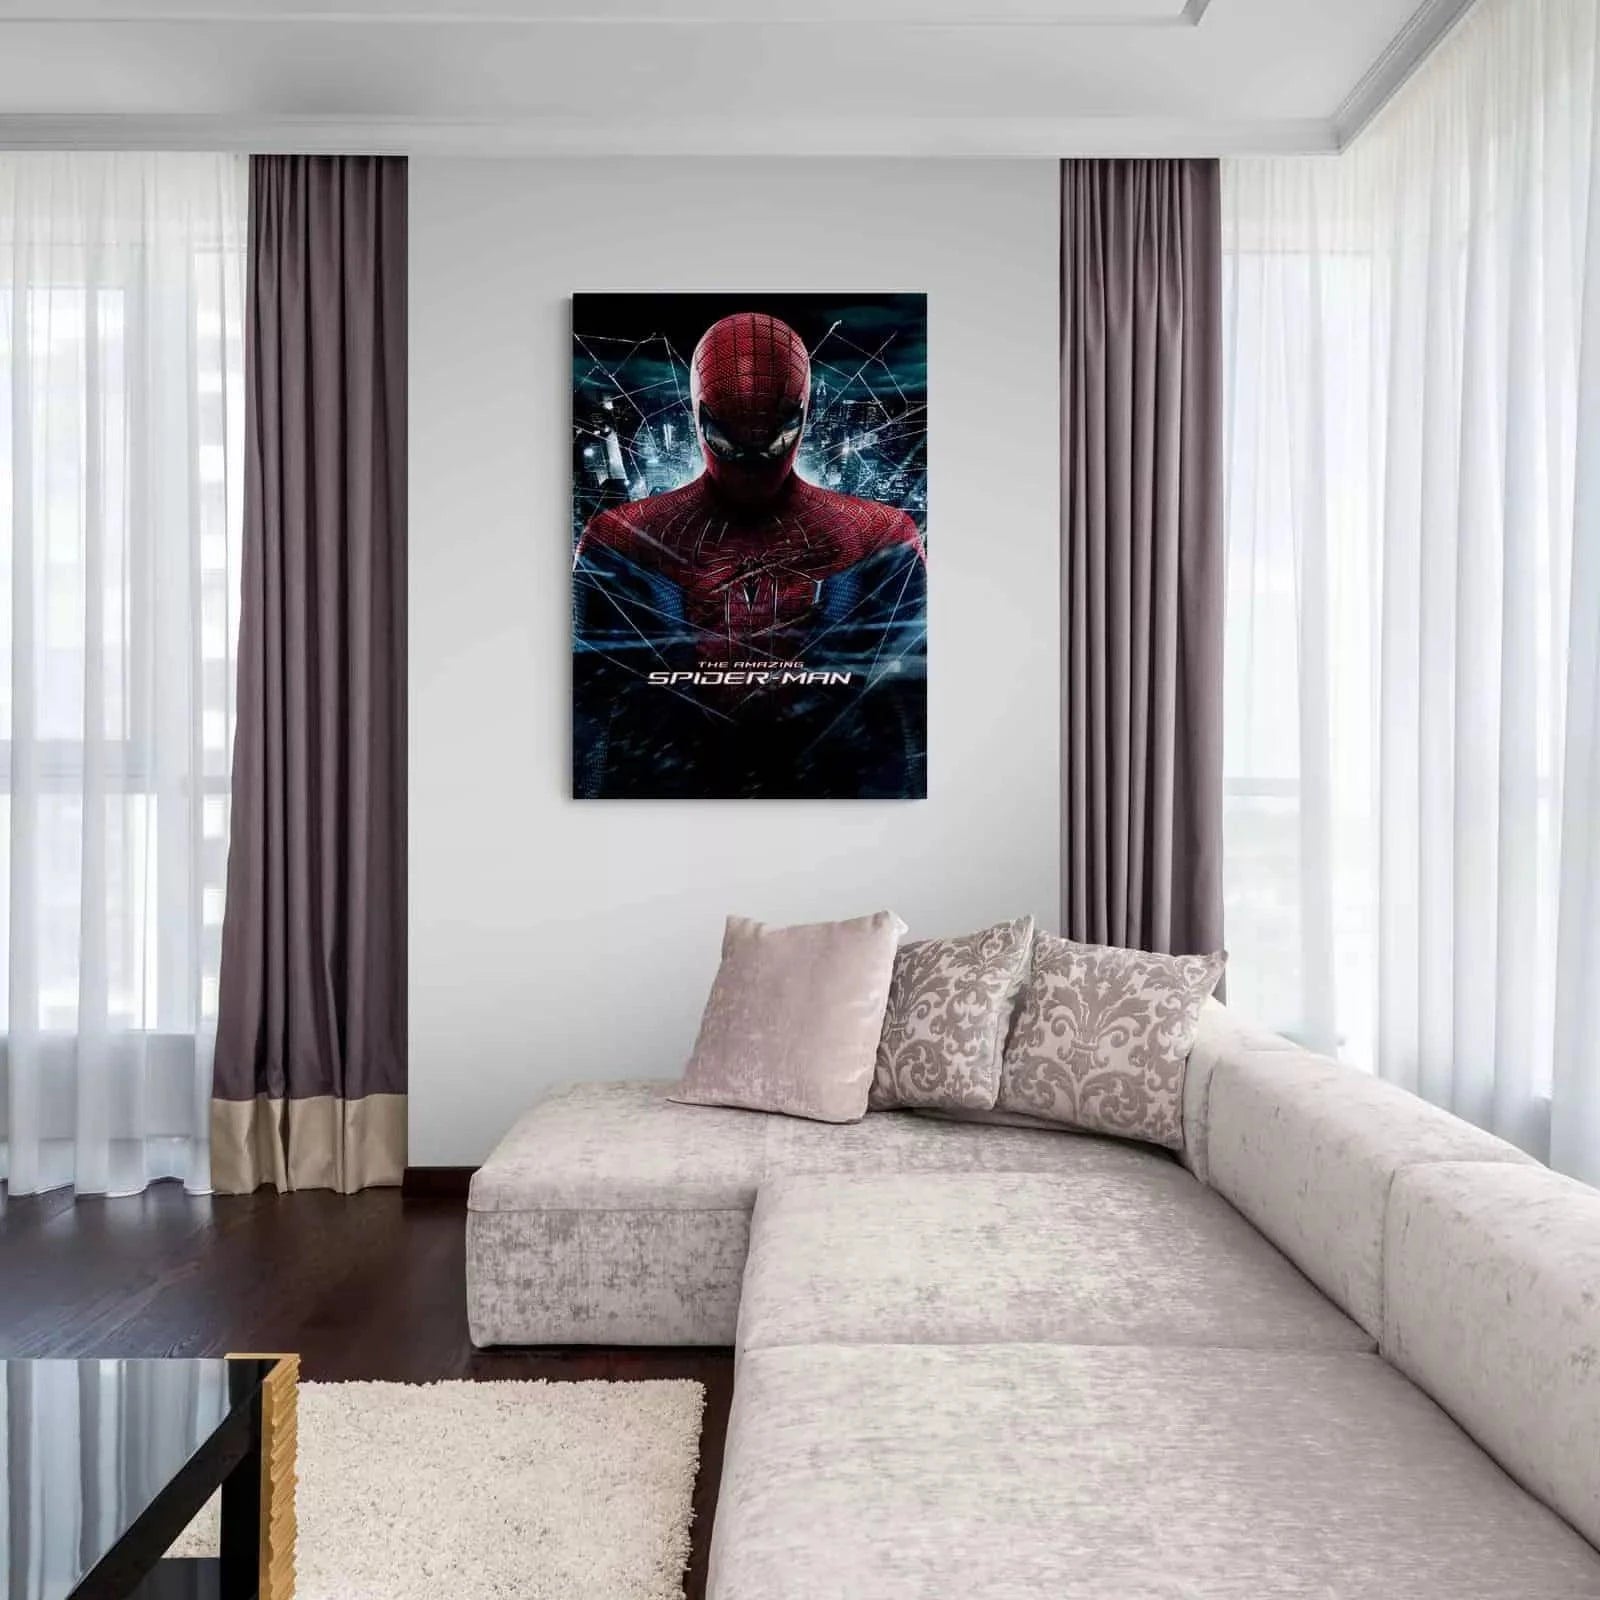 Tableau sur toile Spiderman - Toile en tissu cadre en bois de 3 cm -  Fabriqué en Espagne - Impression en haute résolution - 75 x 120